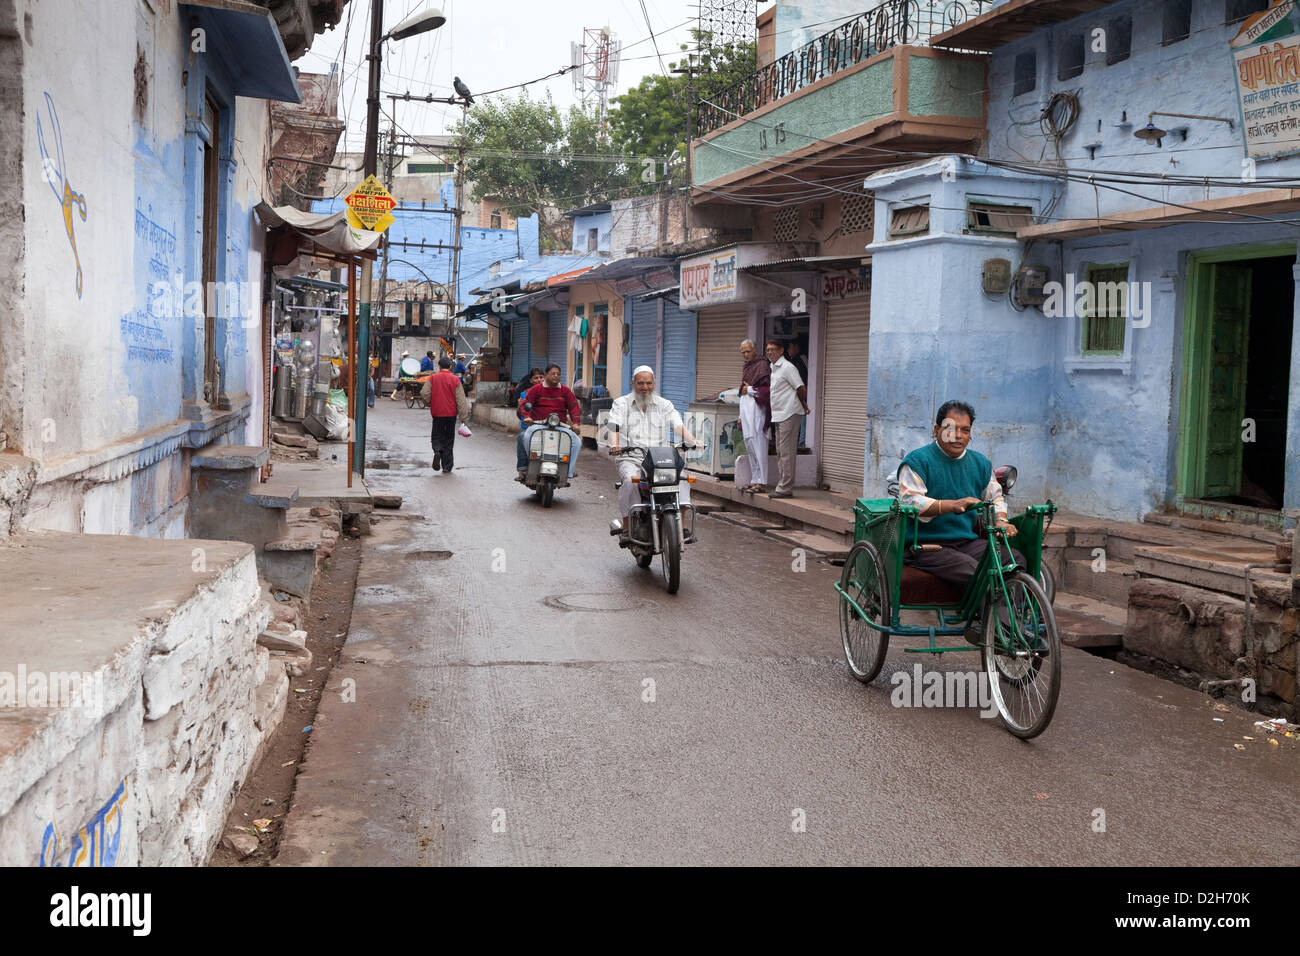 L'Inde, Rajasthan, Jodhpur Scène de rue montrant l'homme en utilisant couramment utilisés pour les personnes atteintes de tricycle de la polio en Inde Banque D'Images